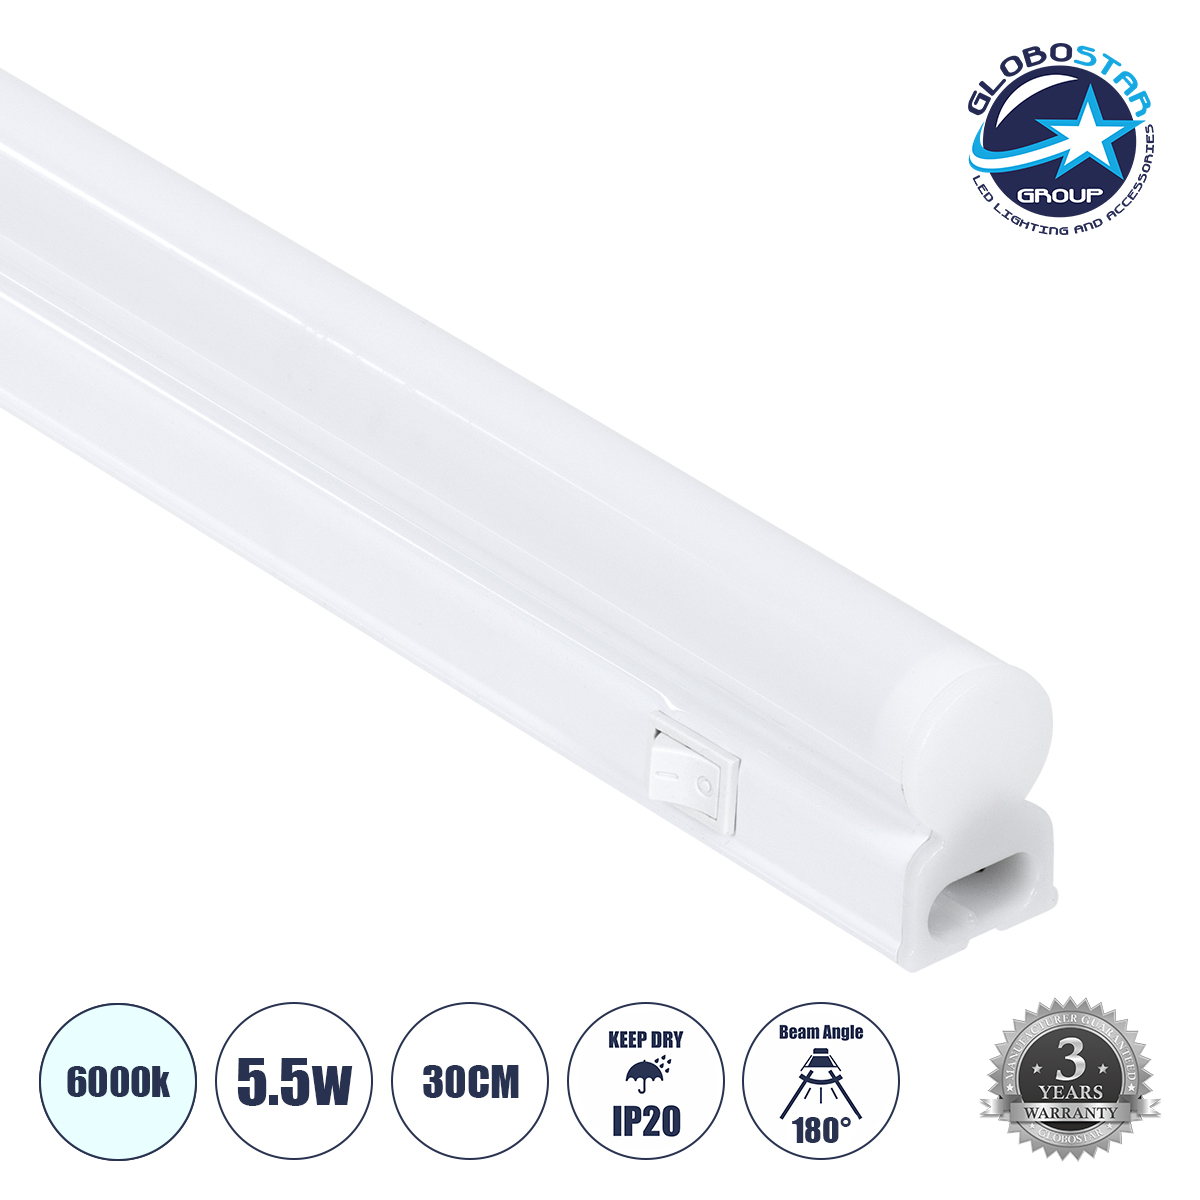 GloboStar® TUBO 60784 Γραμμικό Φωτιστικό Οροφής Linear LED Τύπου T5 Επεκτεινόμενο 5.5W 550lm 180° AC 220-240V IP20 Πάγκου Κουζίνας με Διακόπτη On/Off Μ30 x Π2.2 x Υ3.5cm Ψυχρό Λευκό 6000K – Λευκό – 3 Years Warranty